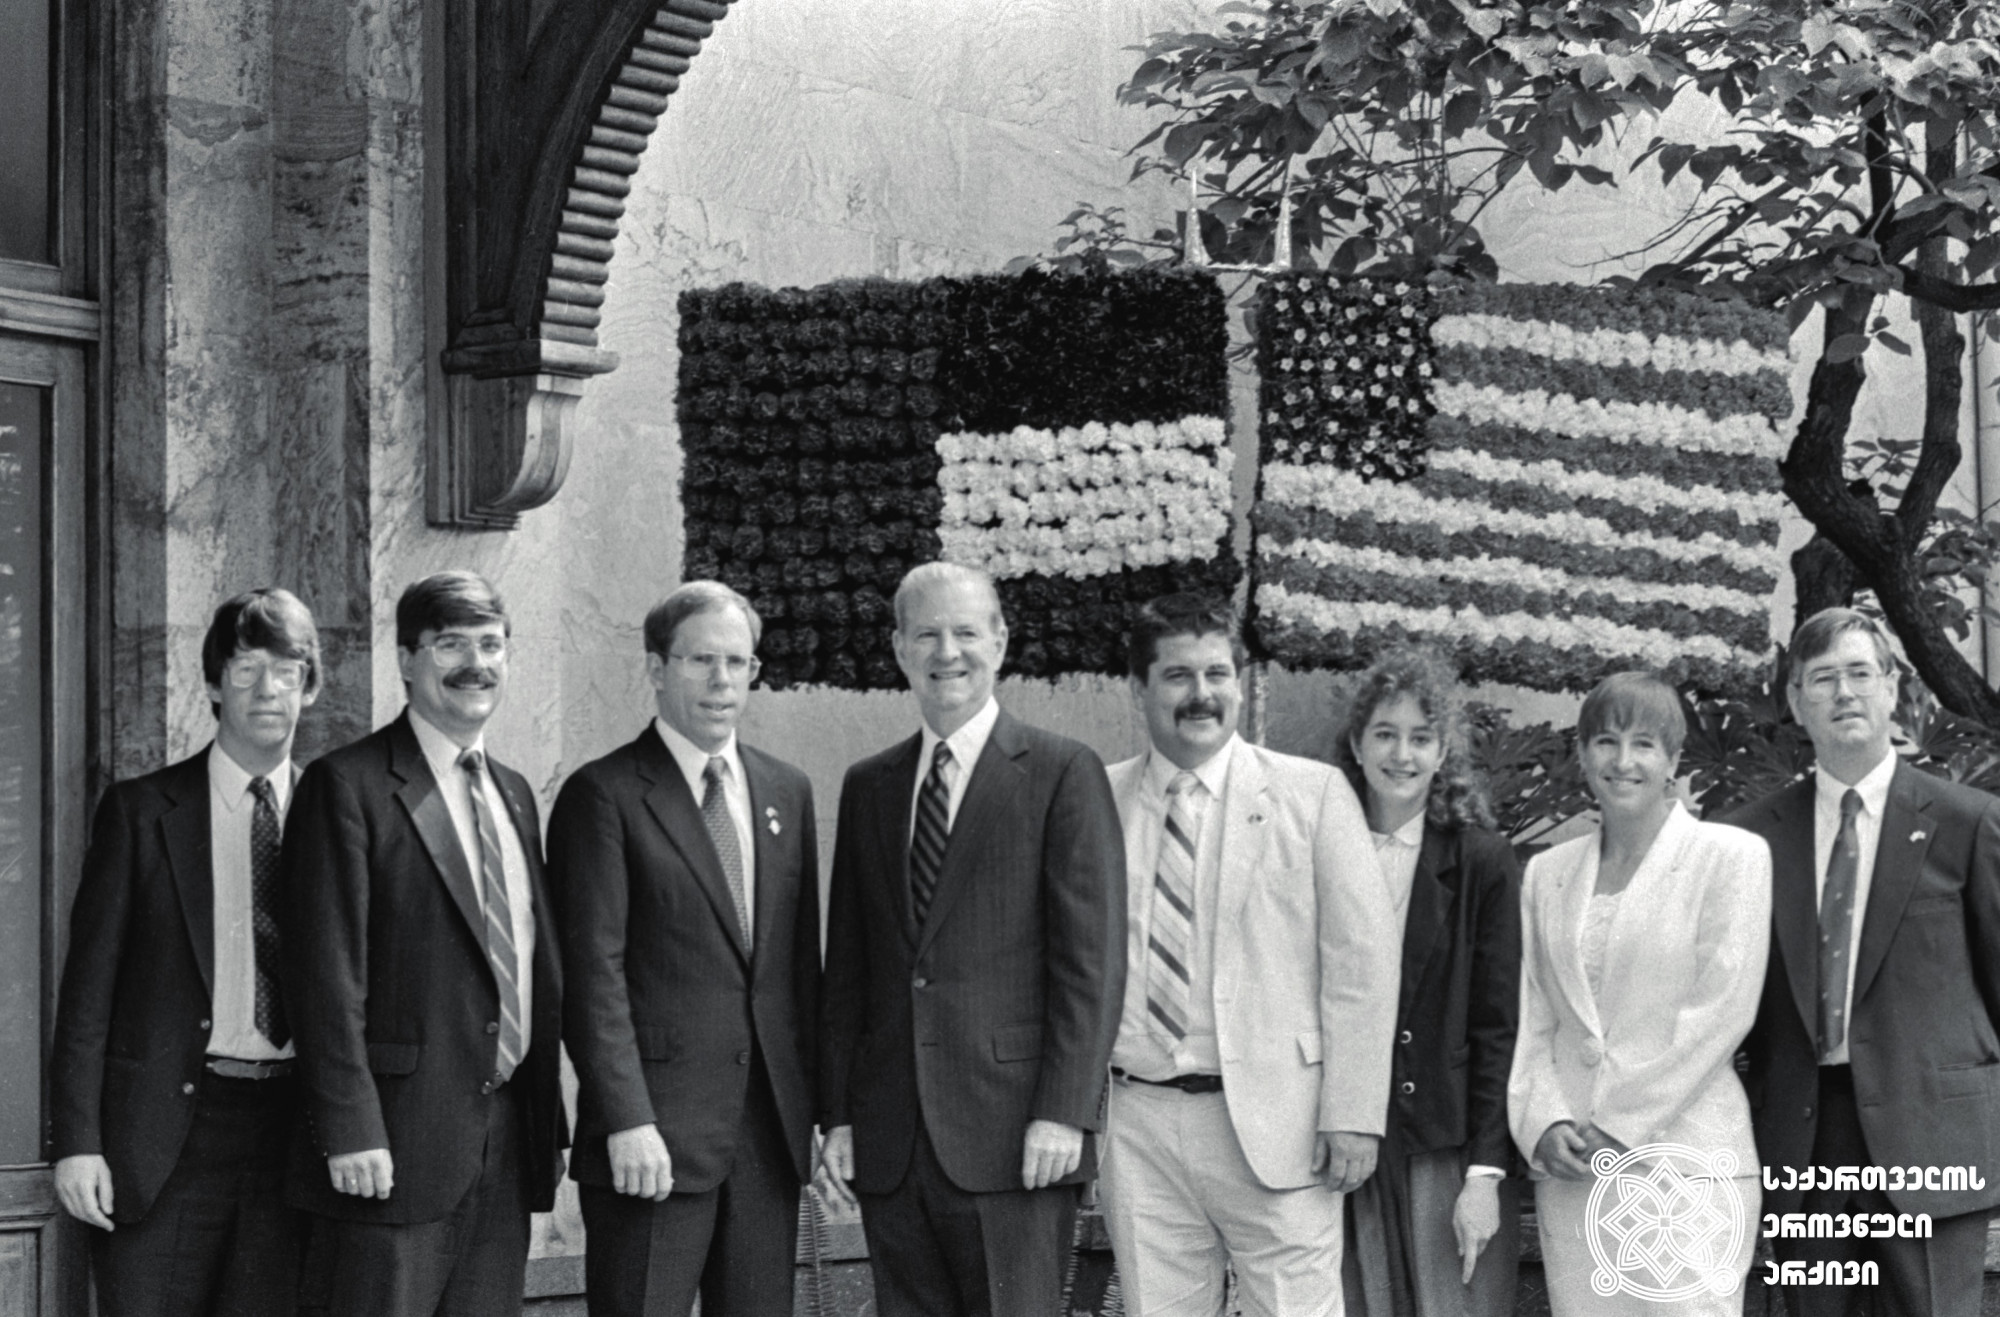 აშშ-ის სახელმწიფო მდივნის ჯეიმზ ბეიკერის ვიზიტი საქართველოში. <br>
1992 წლის 26 მაისი. <br>
სერგო ედიშერაშვილის ფოტო. <br> 

The US Secretary of State, James Baker’s visit to Georgia. <br>
May 26, 1992. <br>
Photo by Sergo Edisherashvili.